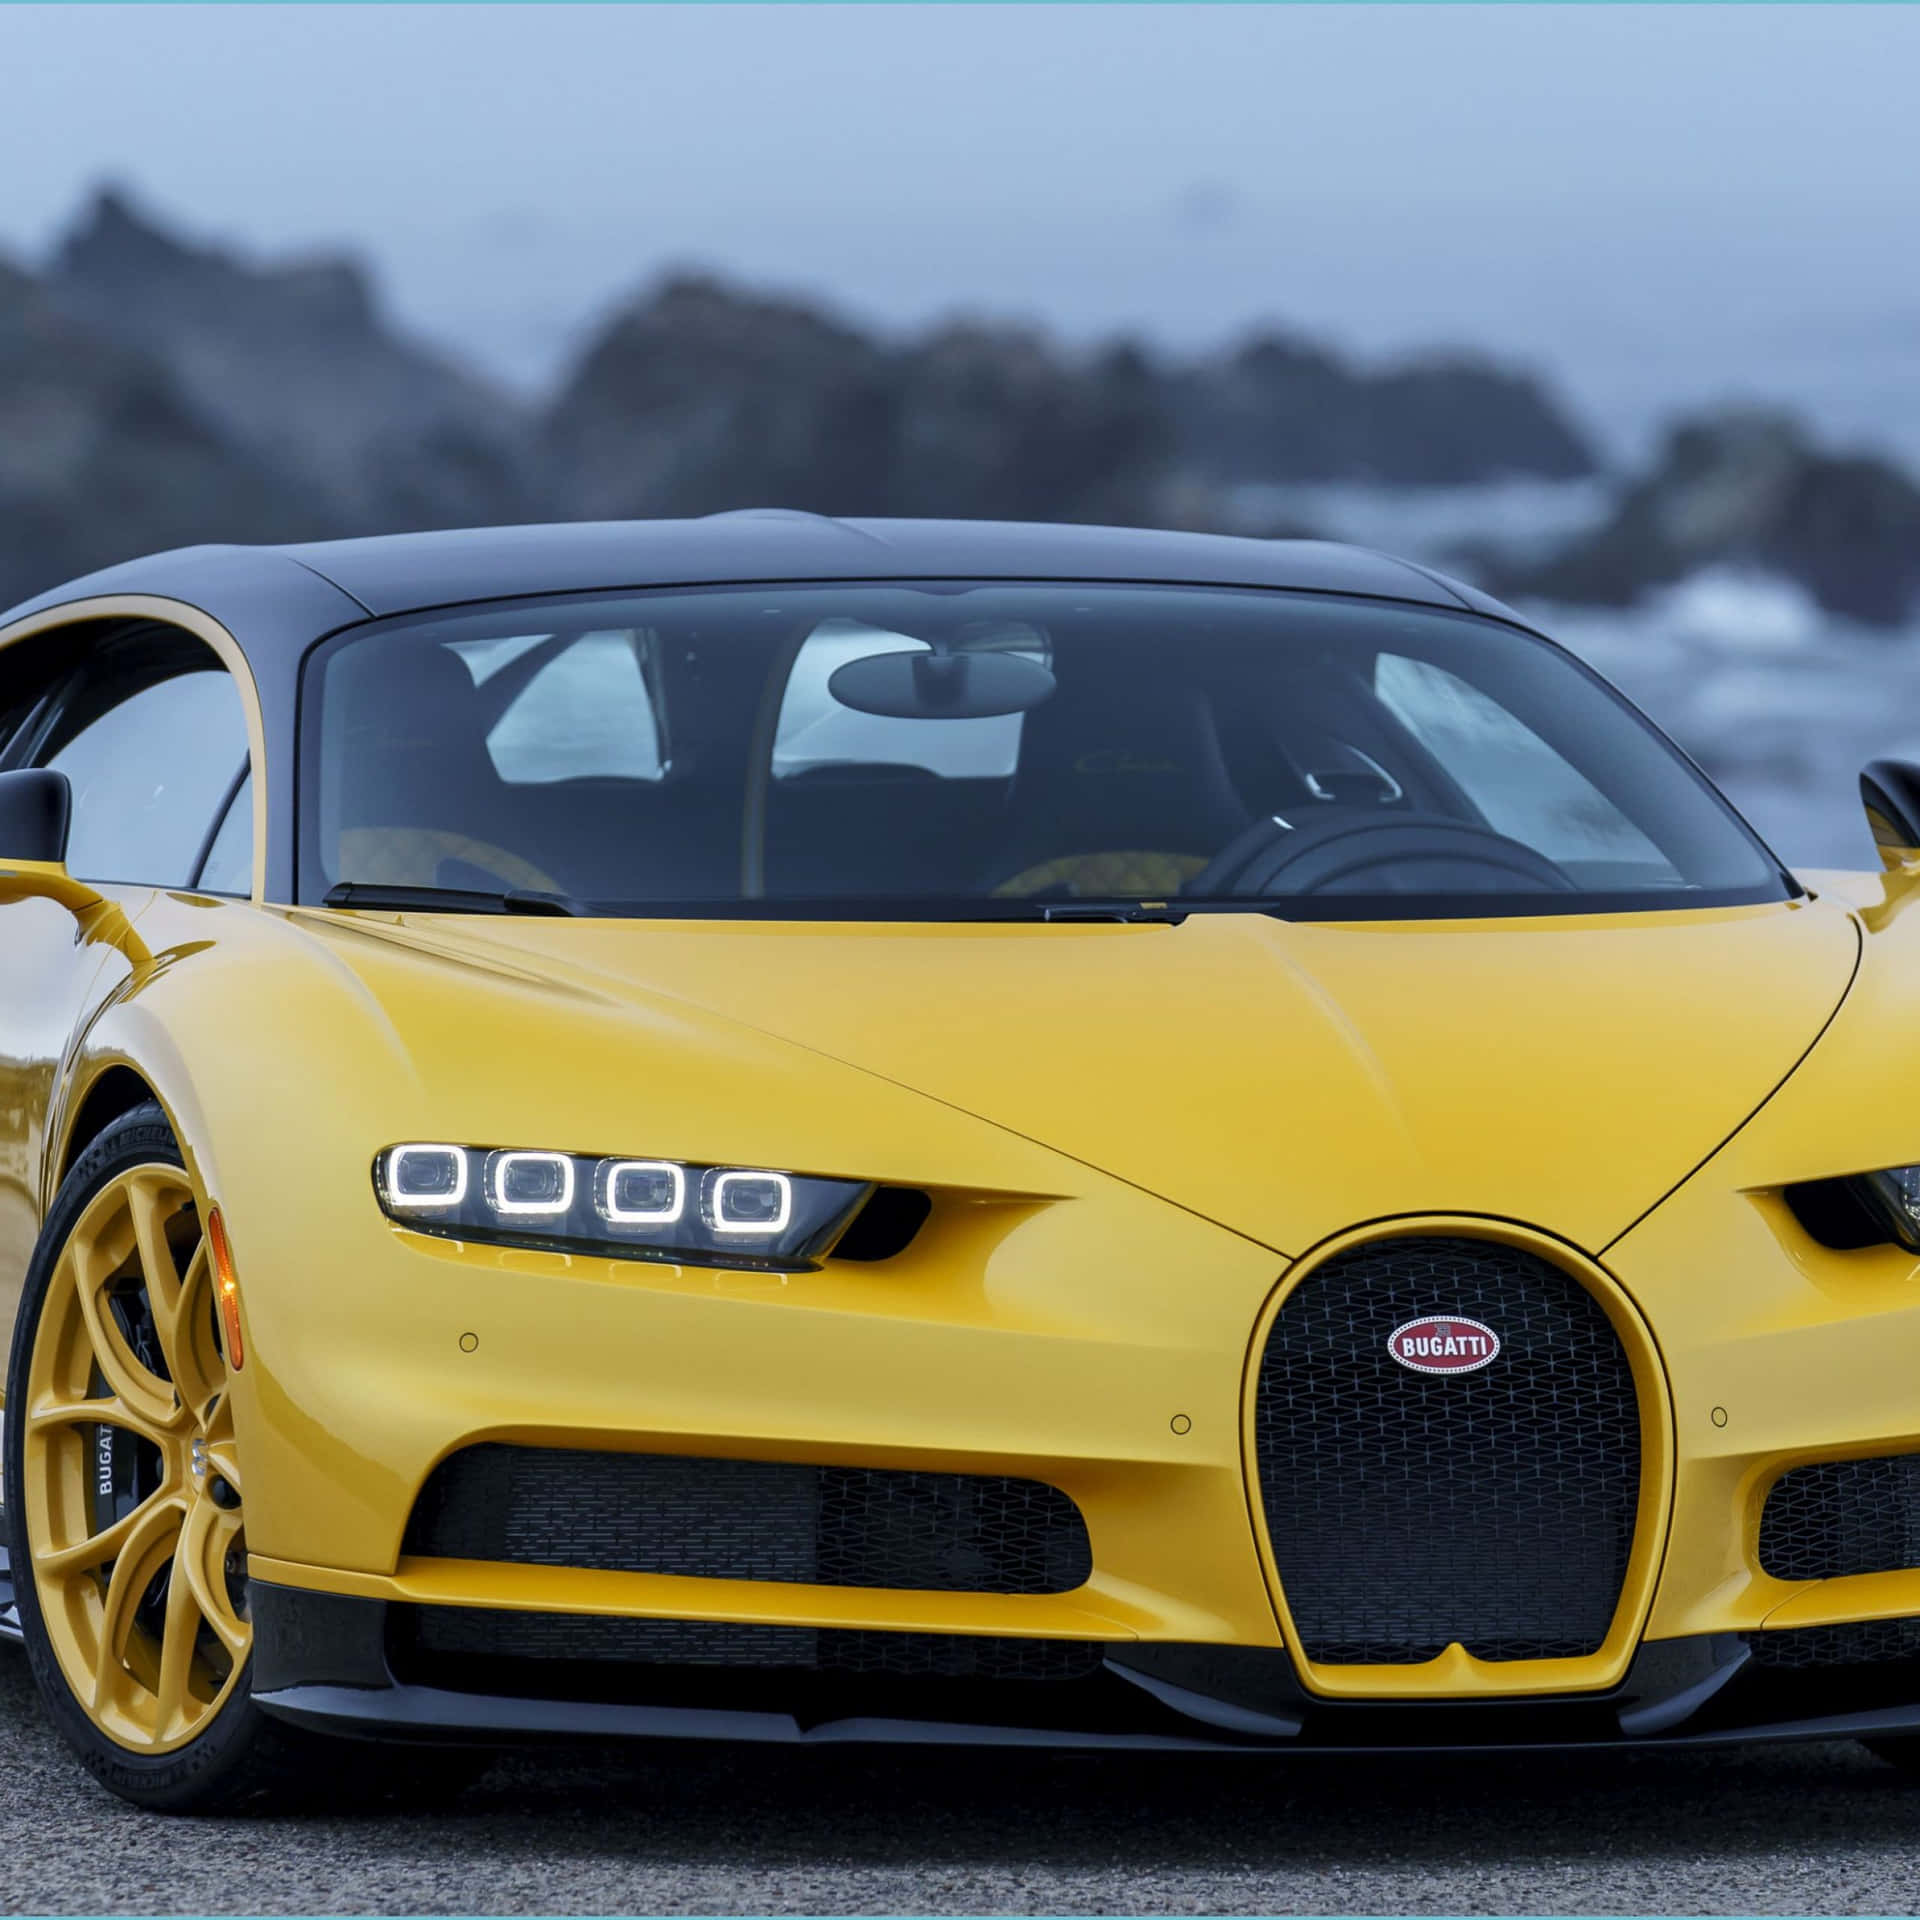 Sientela Emoción De Conducir A Toda Velocidad Por Las Calles En El Mejor Bugatti.